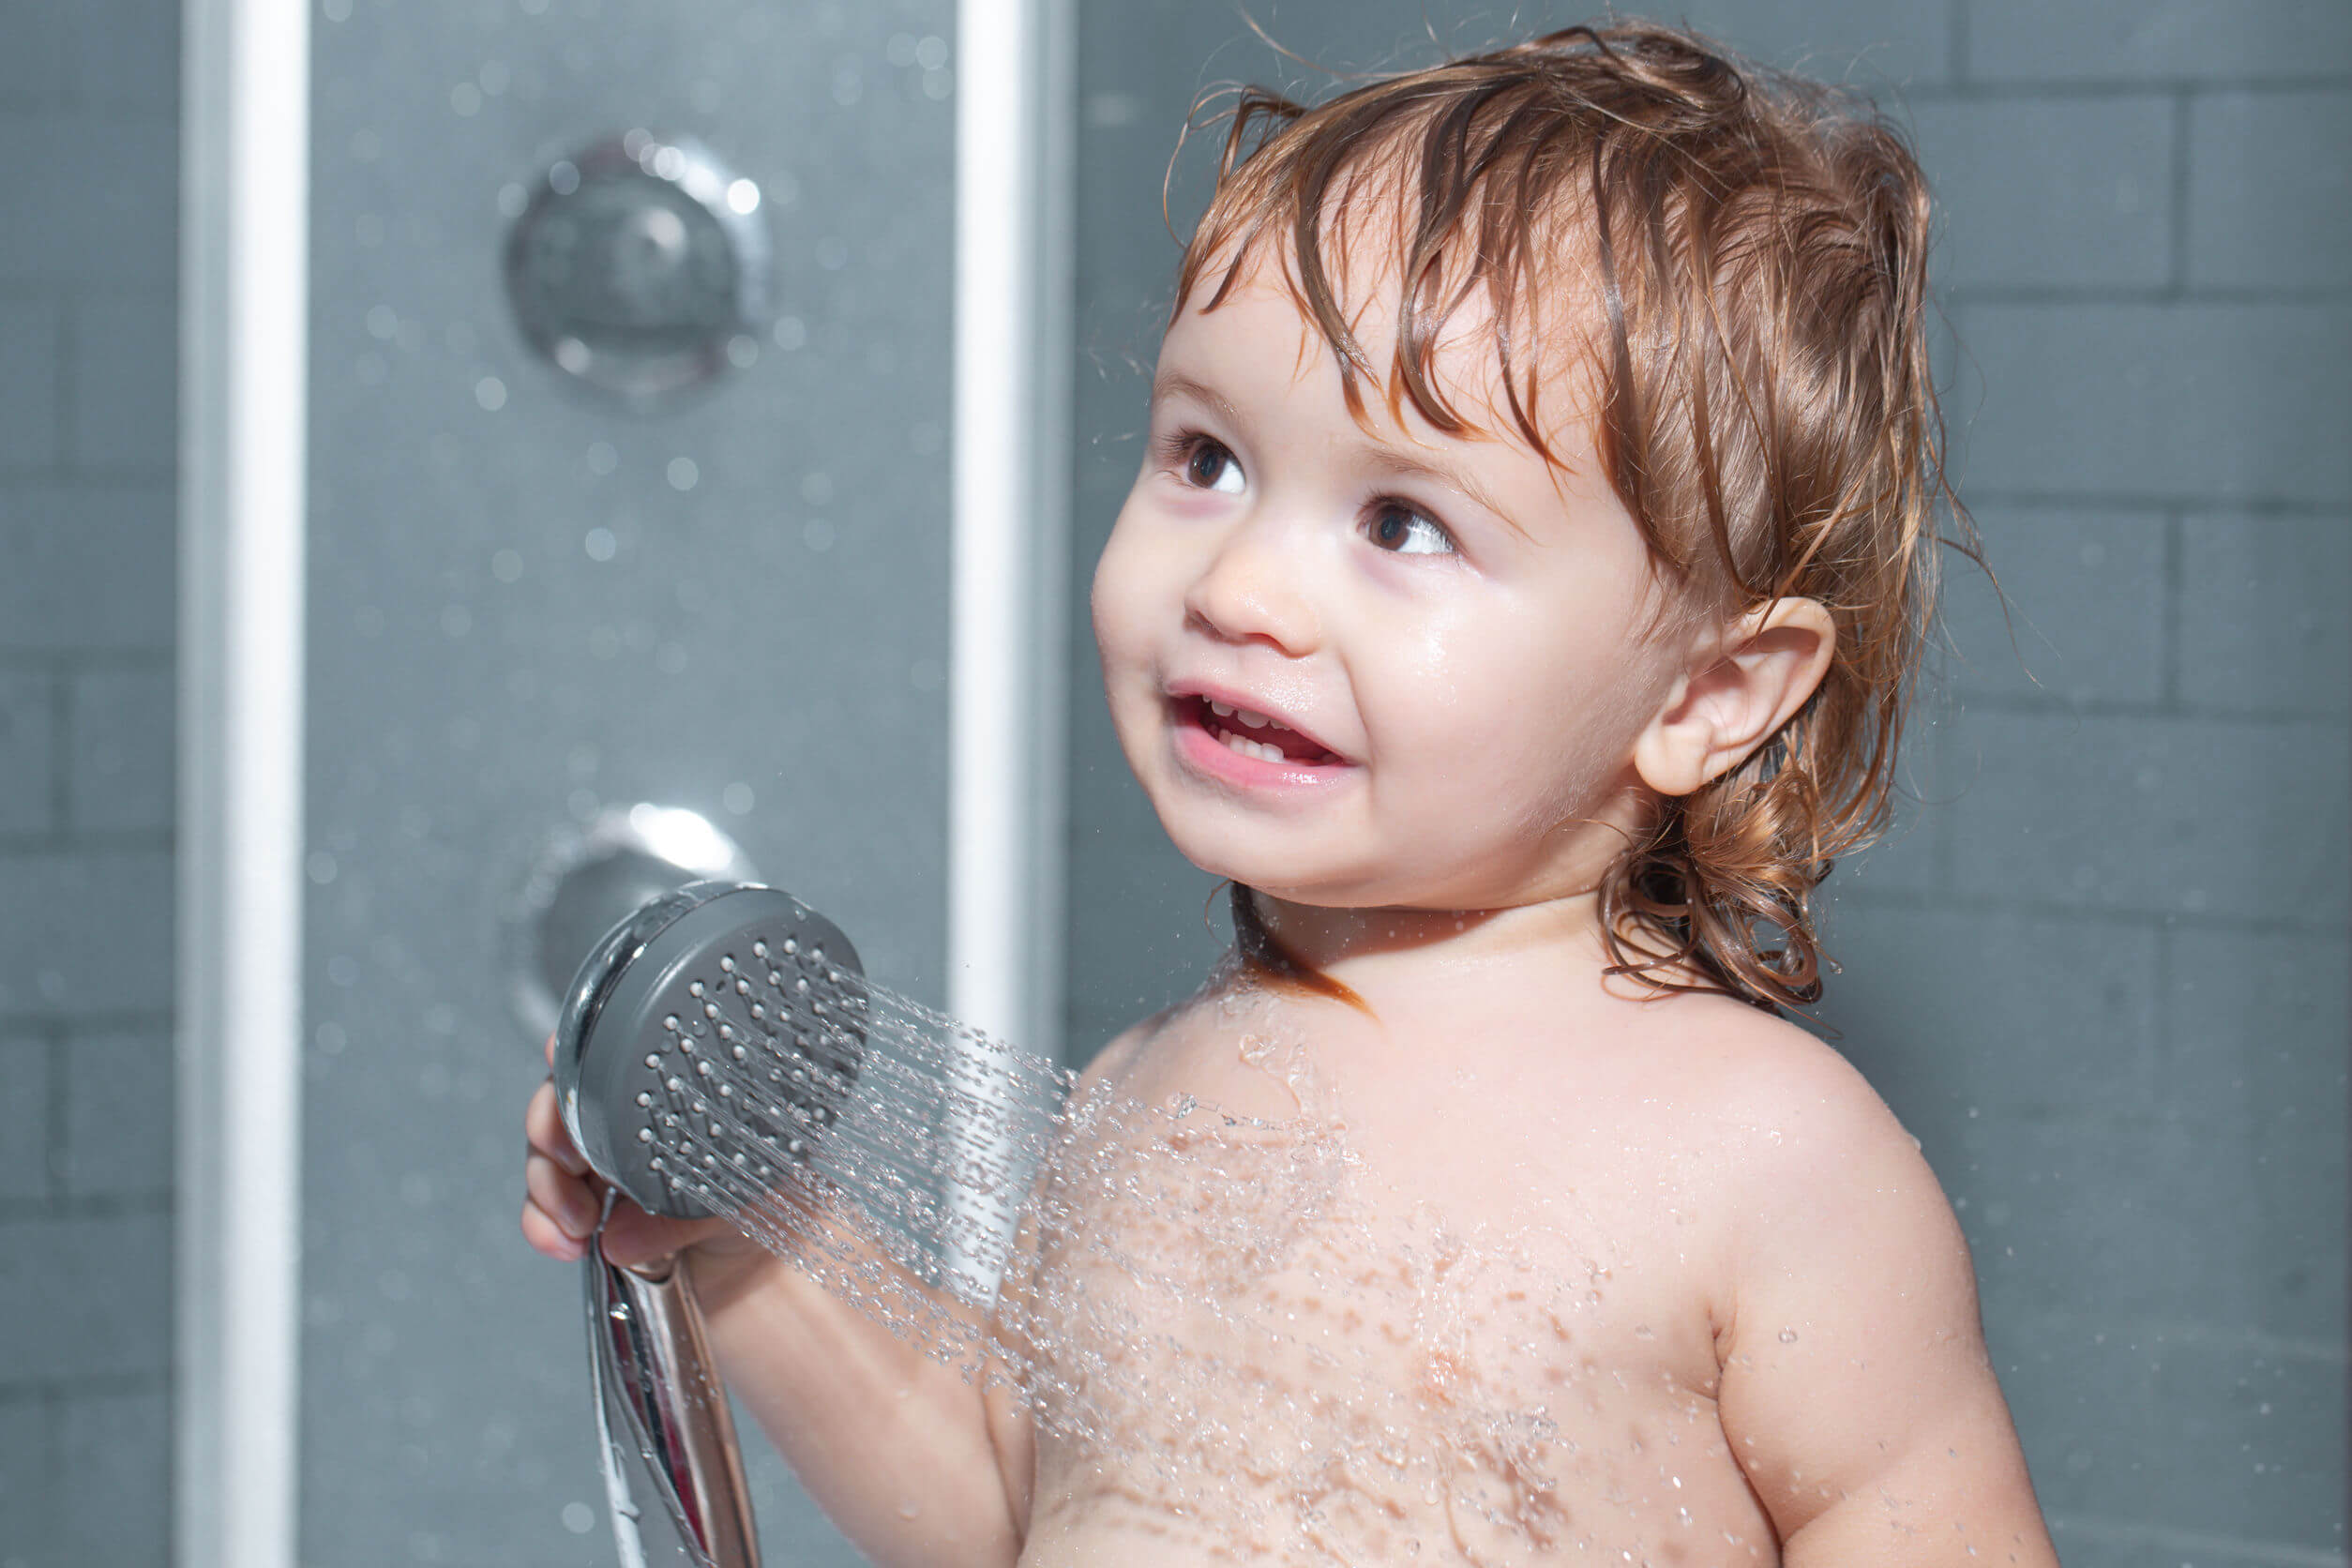 Enfant prenant une douche.